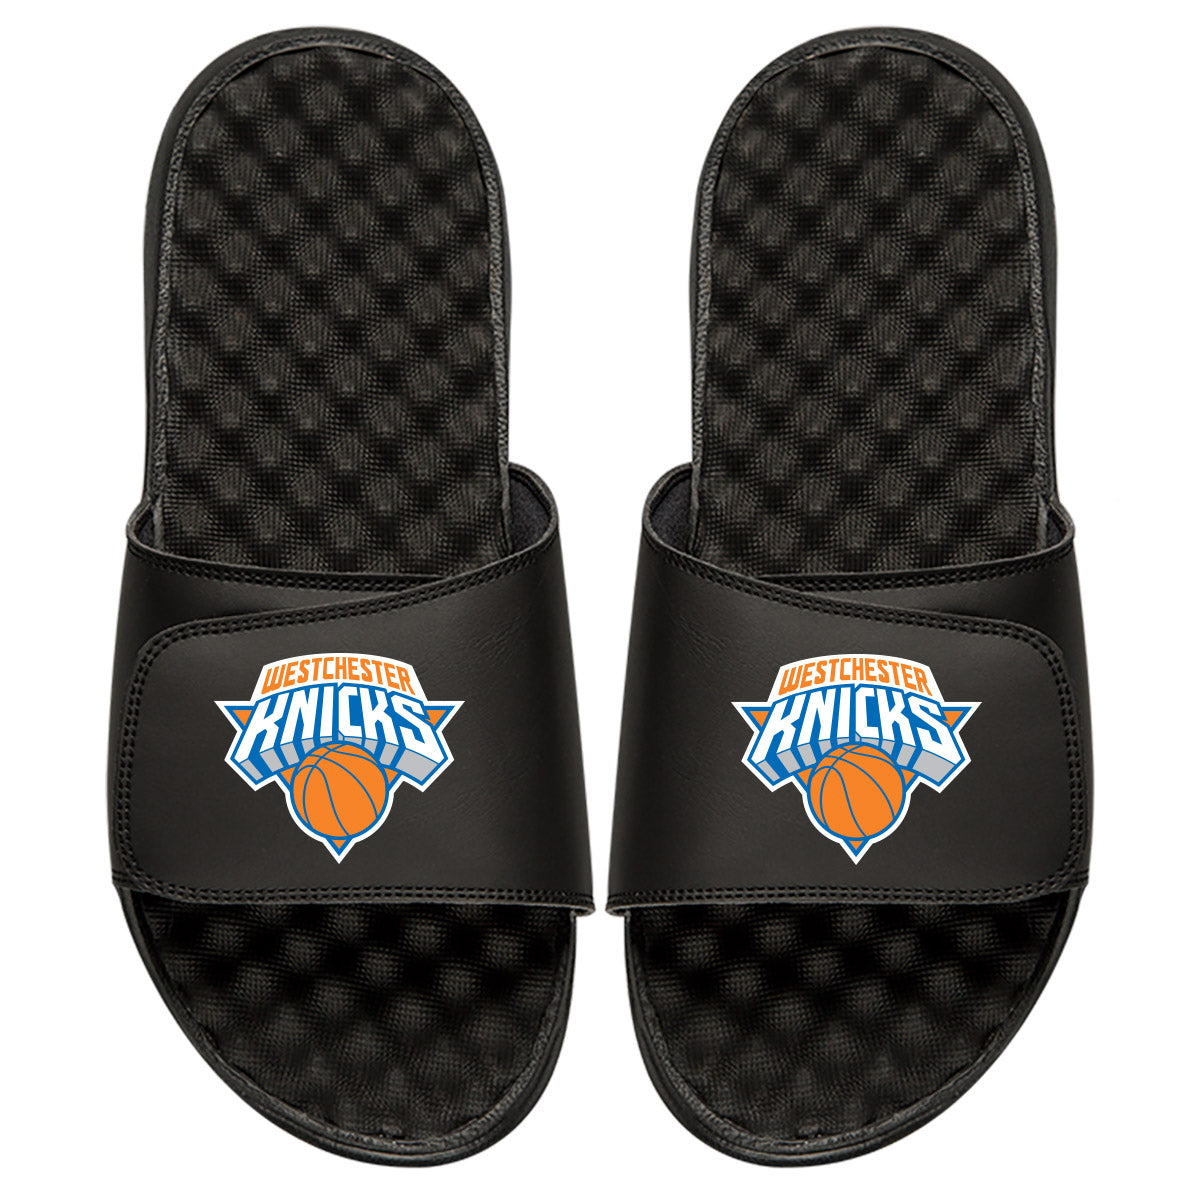 Westchester Knicks Slides